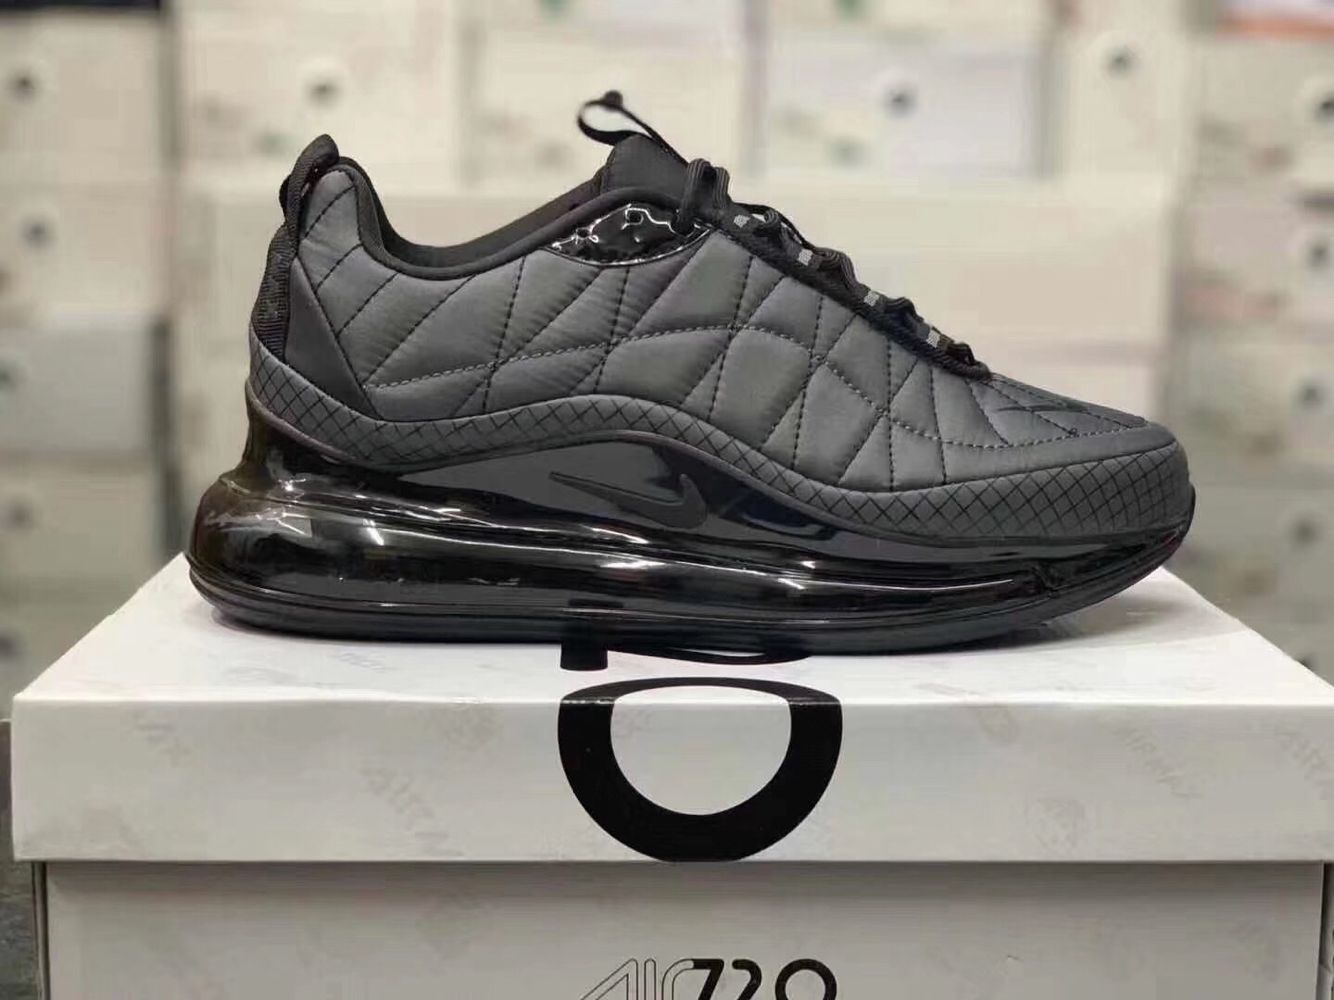 2020 Nike Air Max 720 Carbon Black Shoes